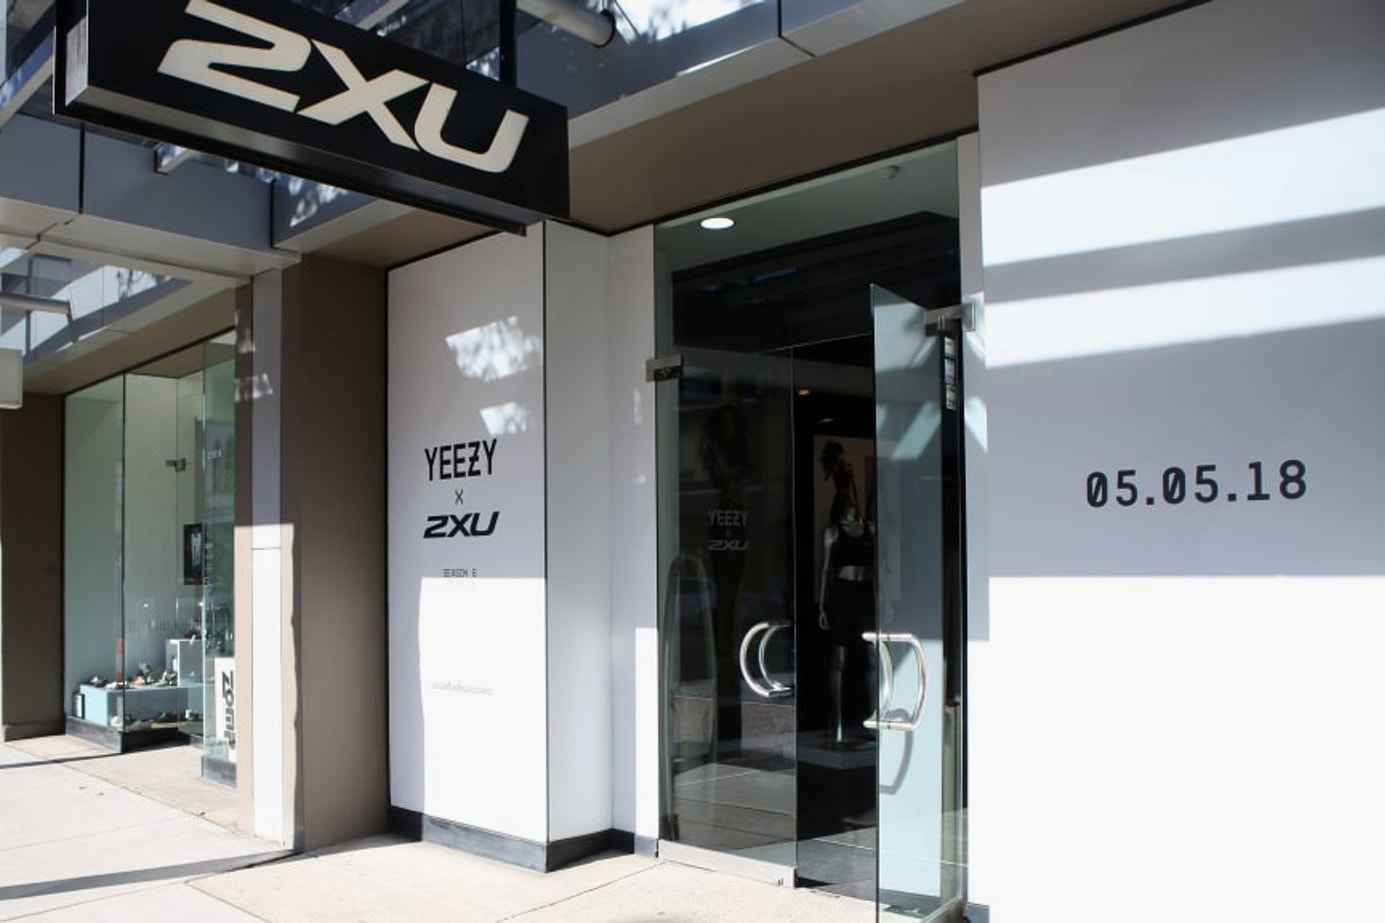 Kanye West 在悉尼舉辦的 YEEZY x 2XU 派對因無人問津而被迫取消